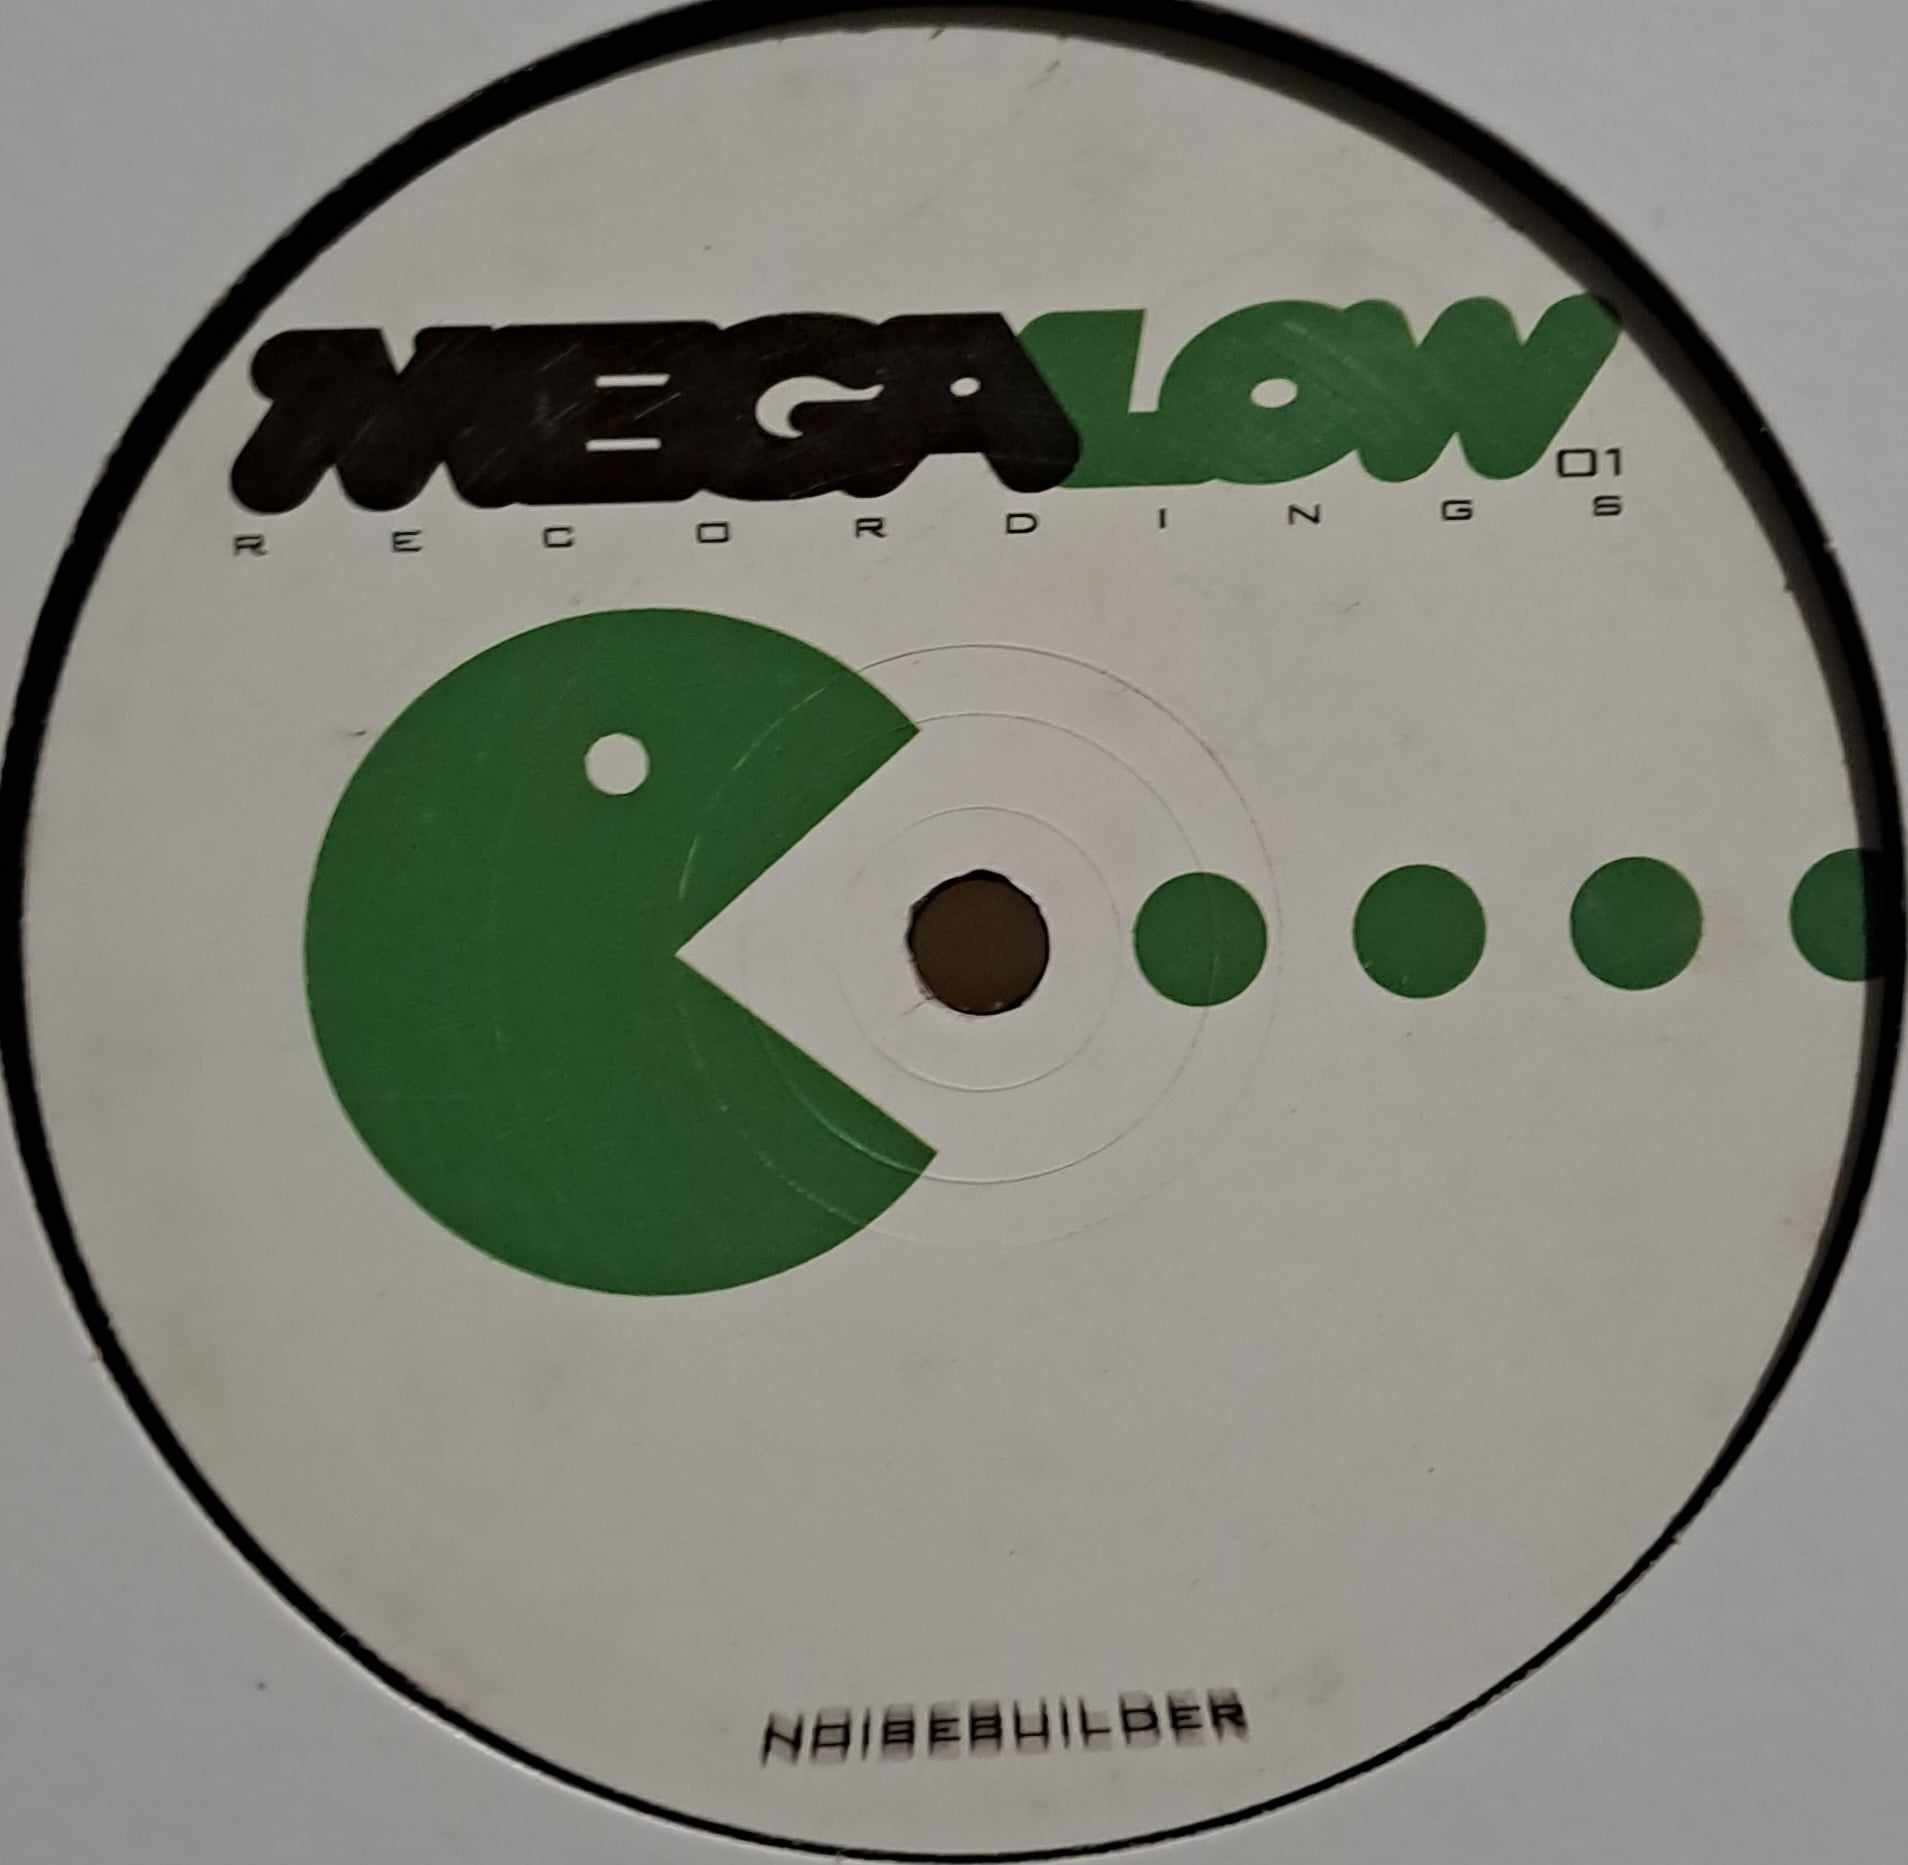 Toolbox Killerz 02 (Megalow 01) - vinyle hardcore